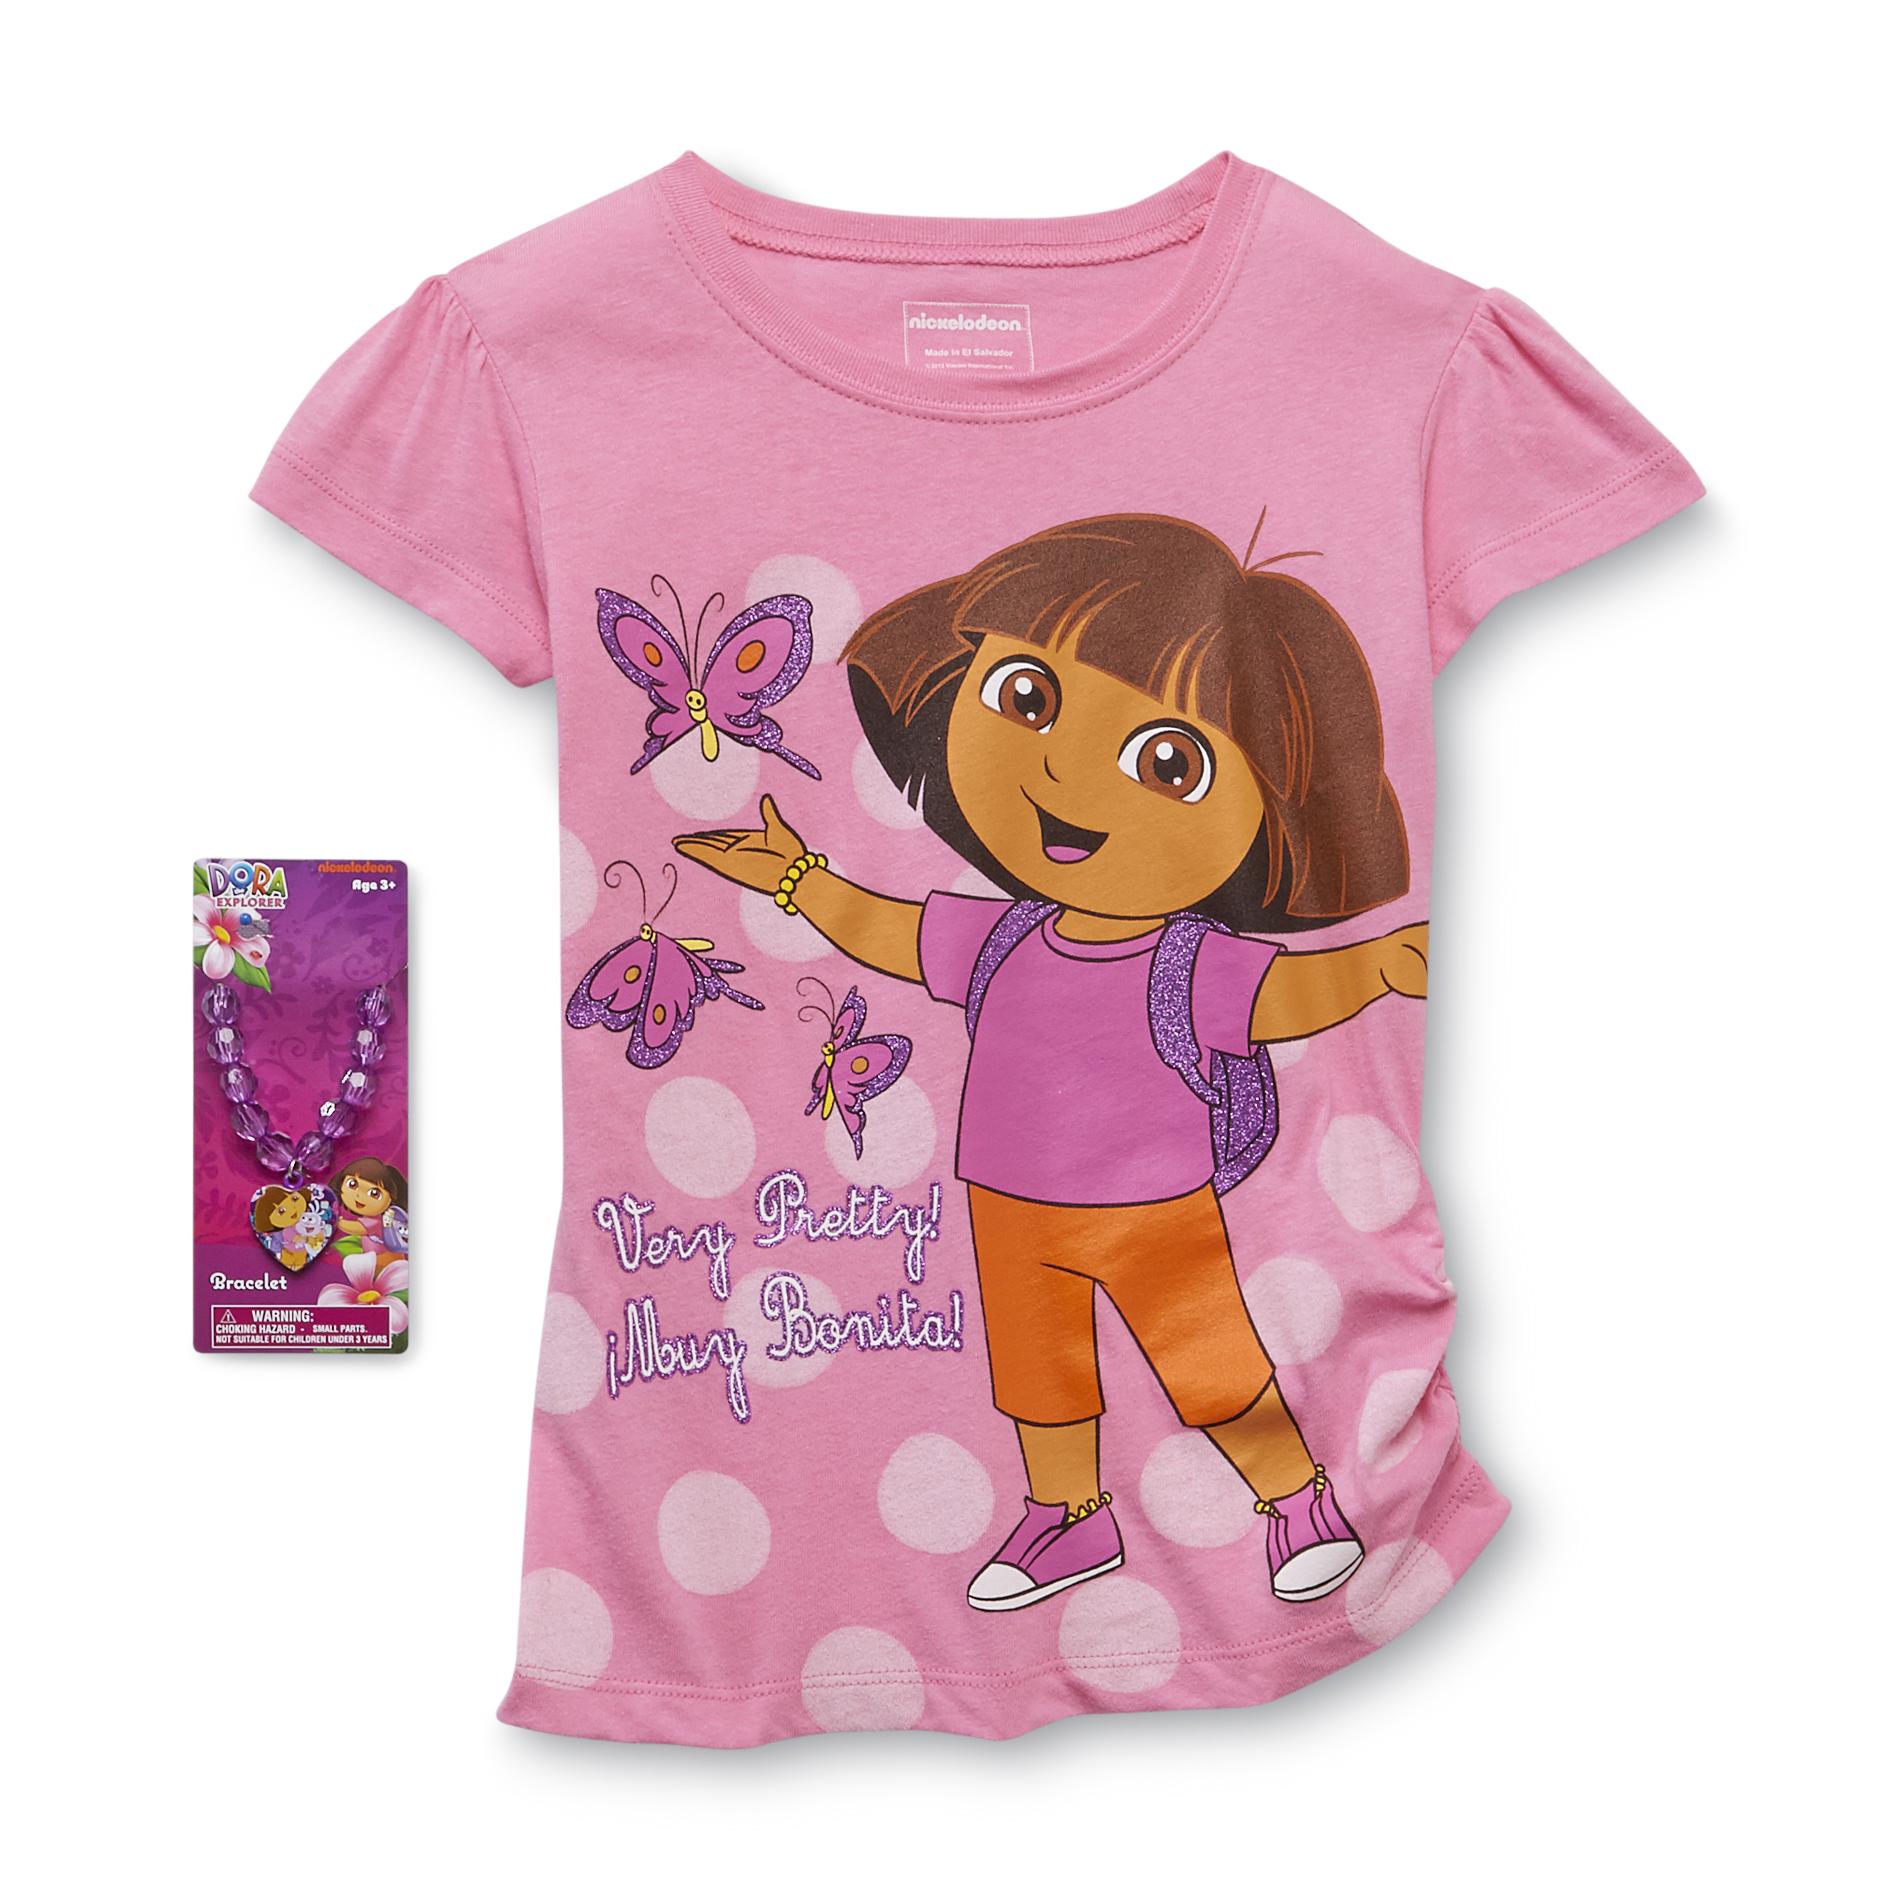 Nickelodeon Dora the Explorer Girl's T-Shirt & Bracelet